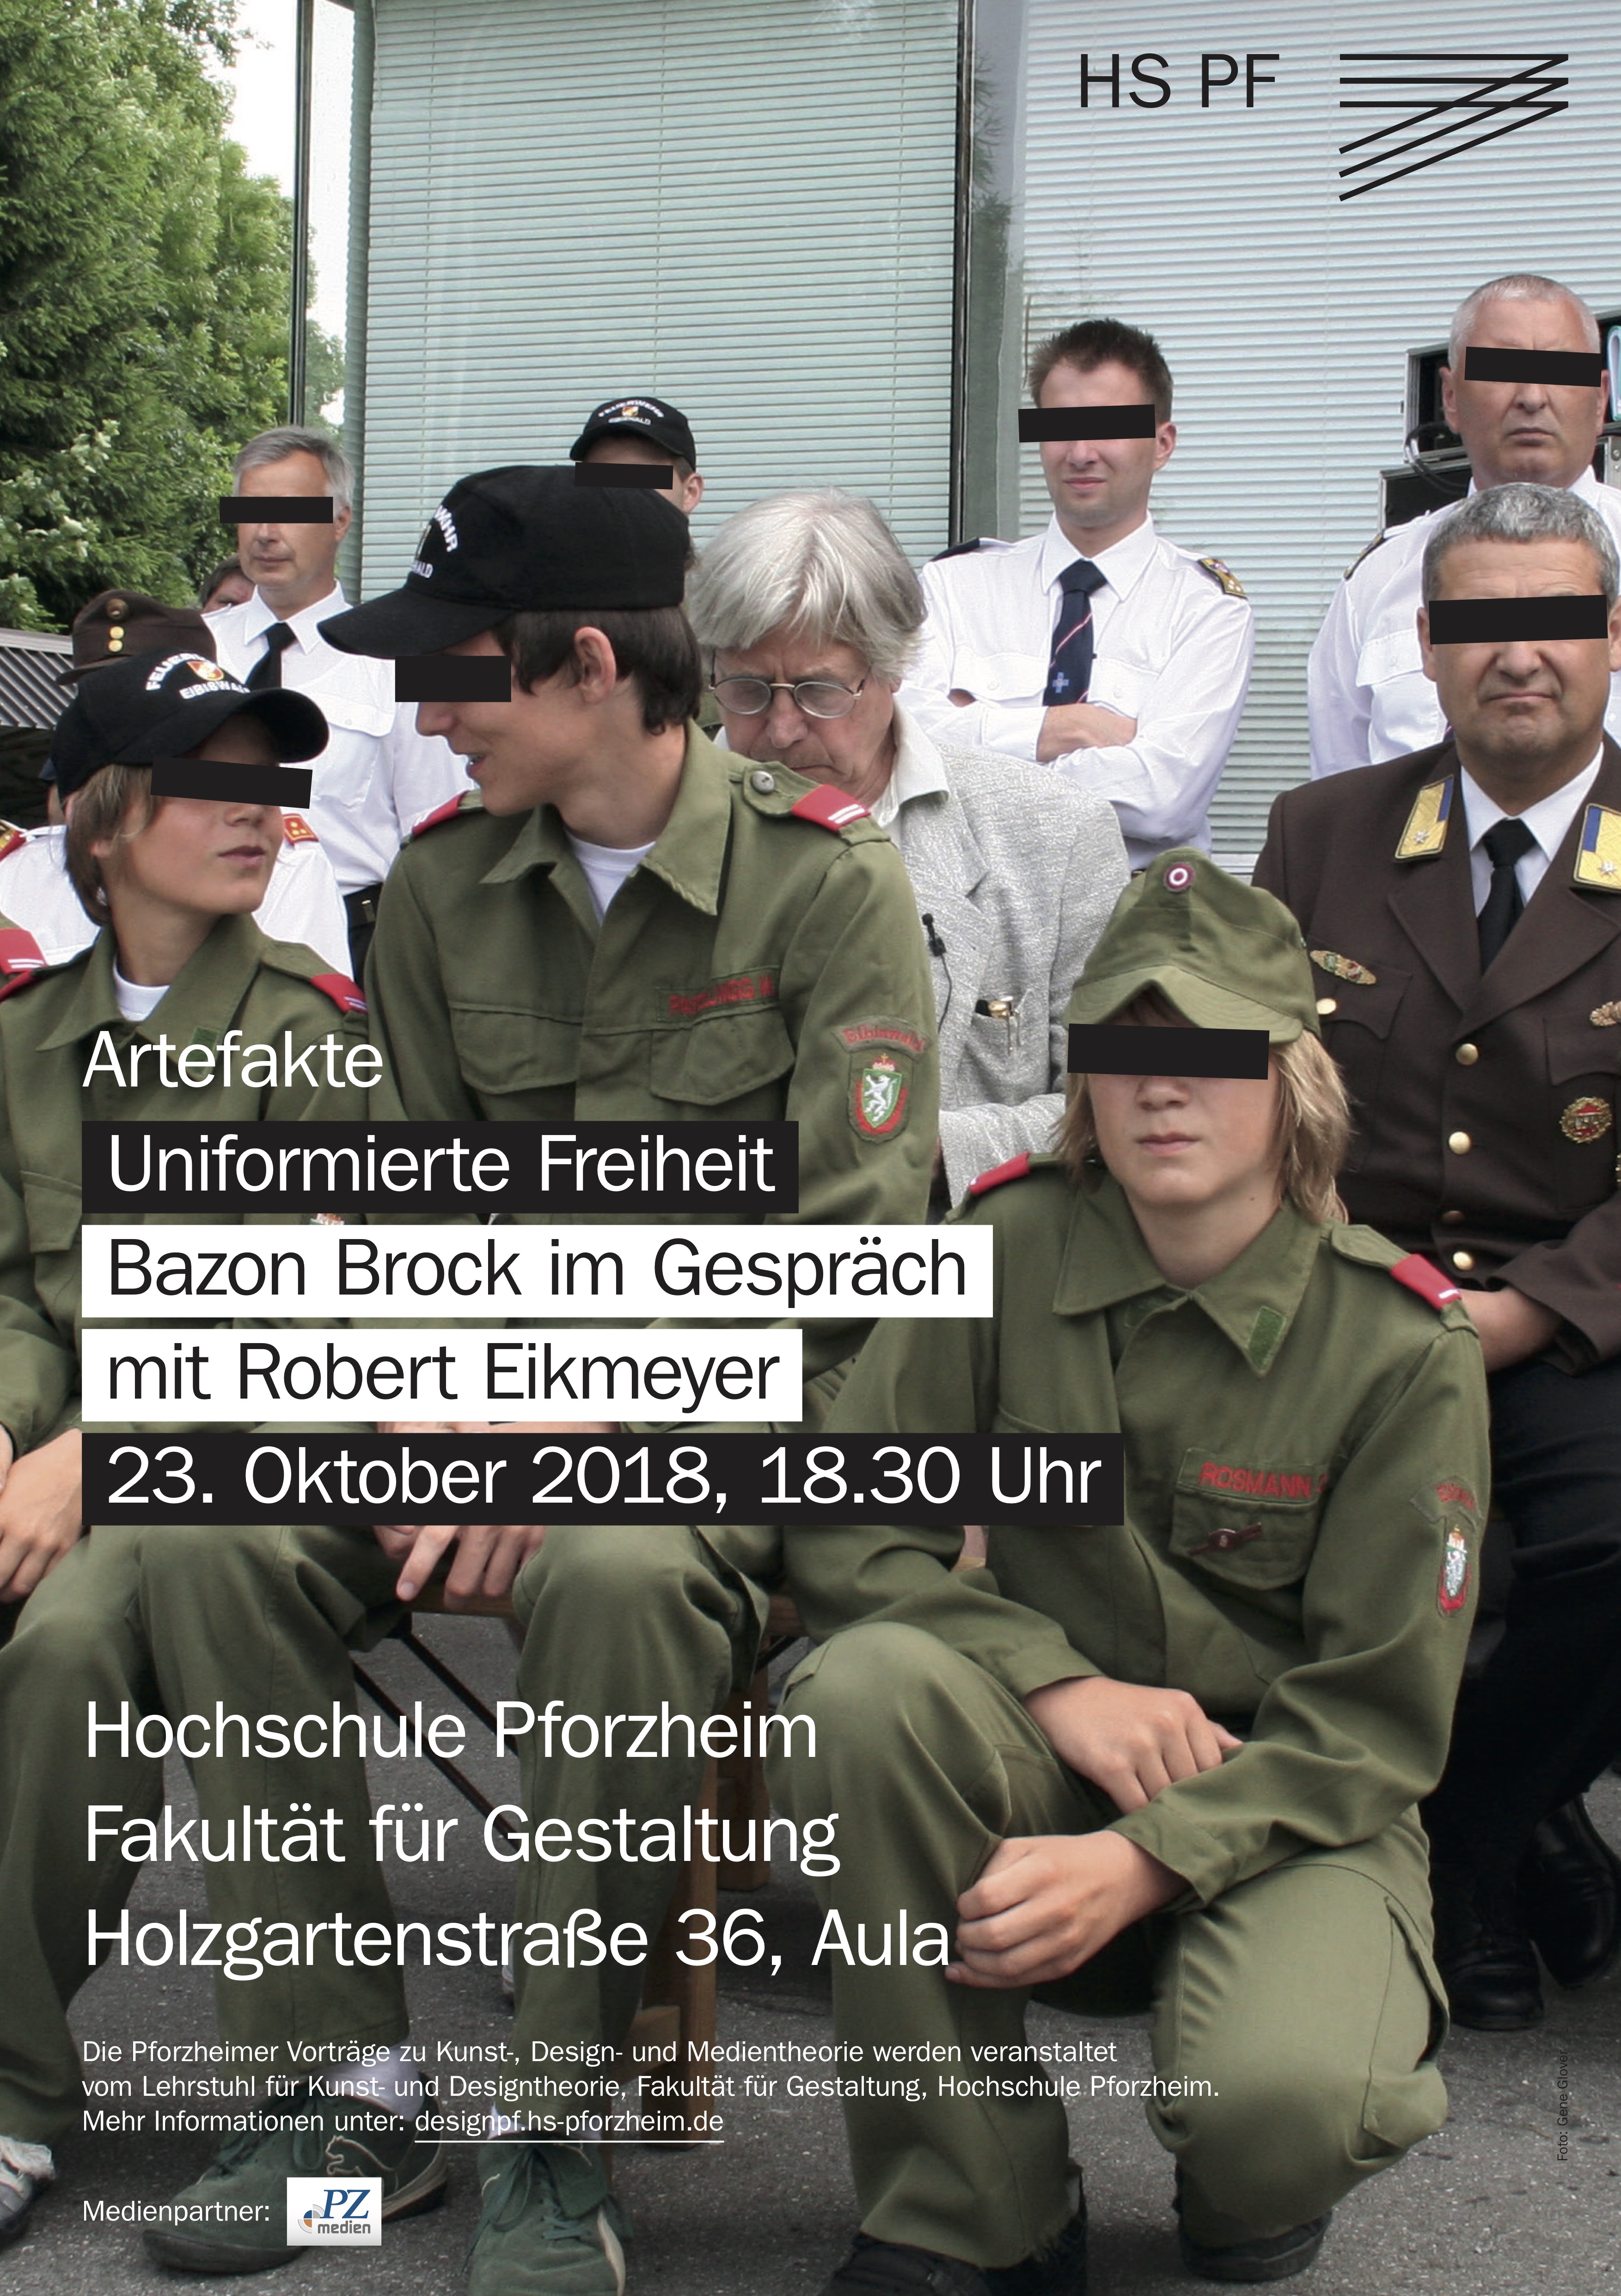 Uniformierte Freiheit. Bazon Brock im Gespräch mit Robert Eikmeyer, Bild: Hochschule Pforzheim, 23.10.2018.